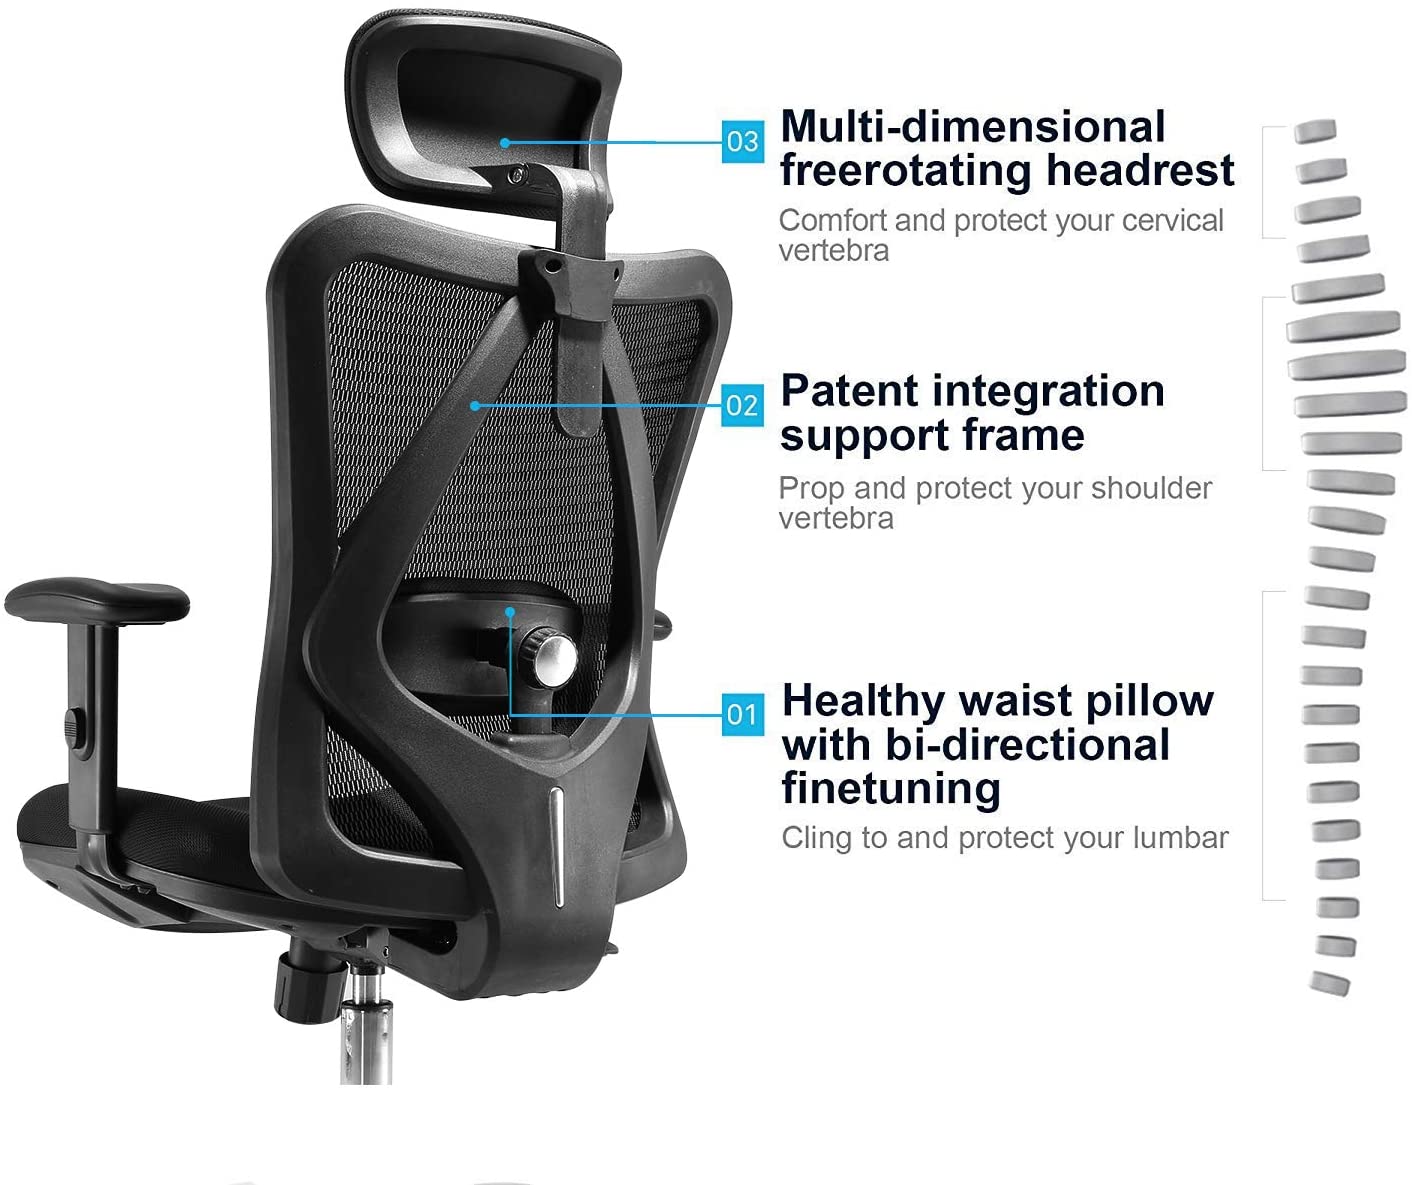 SIHOO Chaise de bureau ergonomique moderne, chaise de bureau, respirante  accoudoir relevable ~ noir